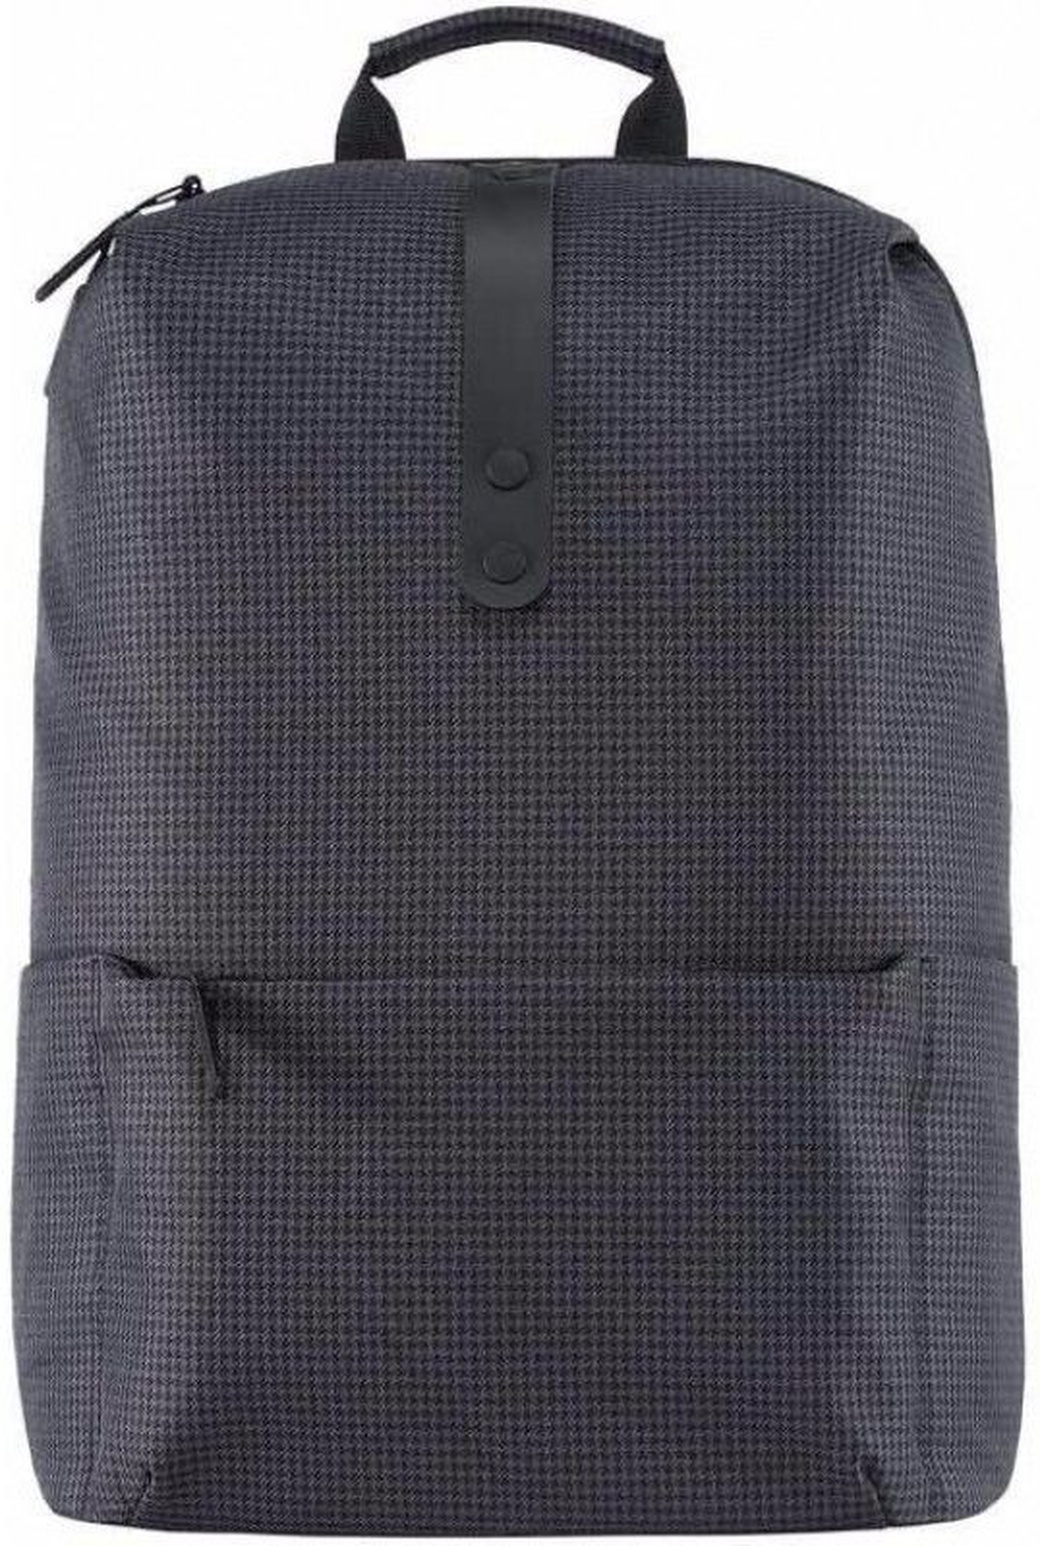 Рюкзак Xiaomi Mi College Casual Shoulder Bag, черный фото